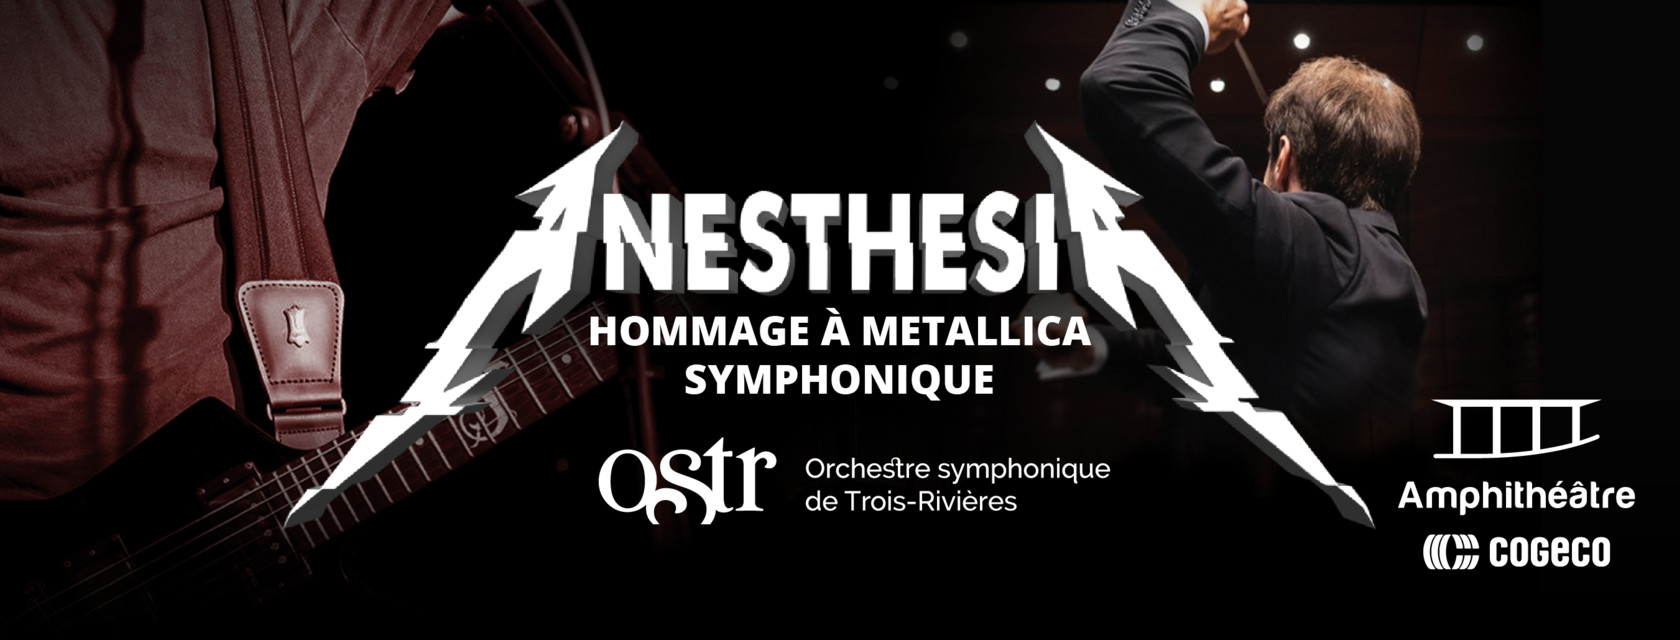 L'hommage à Metallica symphonique débarque à l’Amphithéâtre Cogeco!